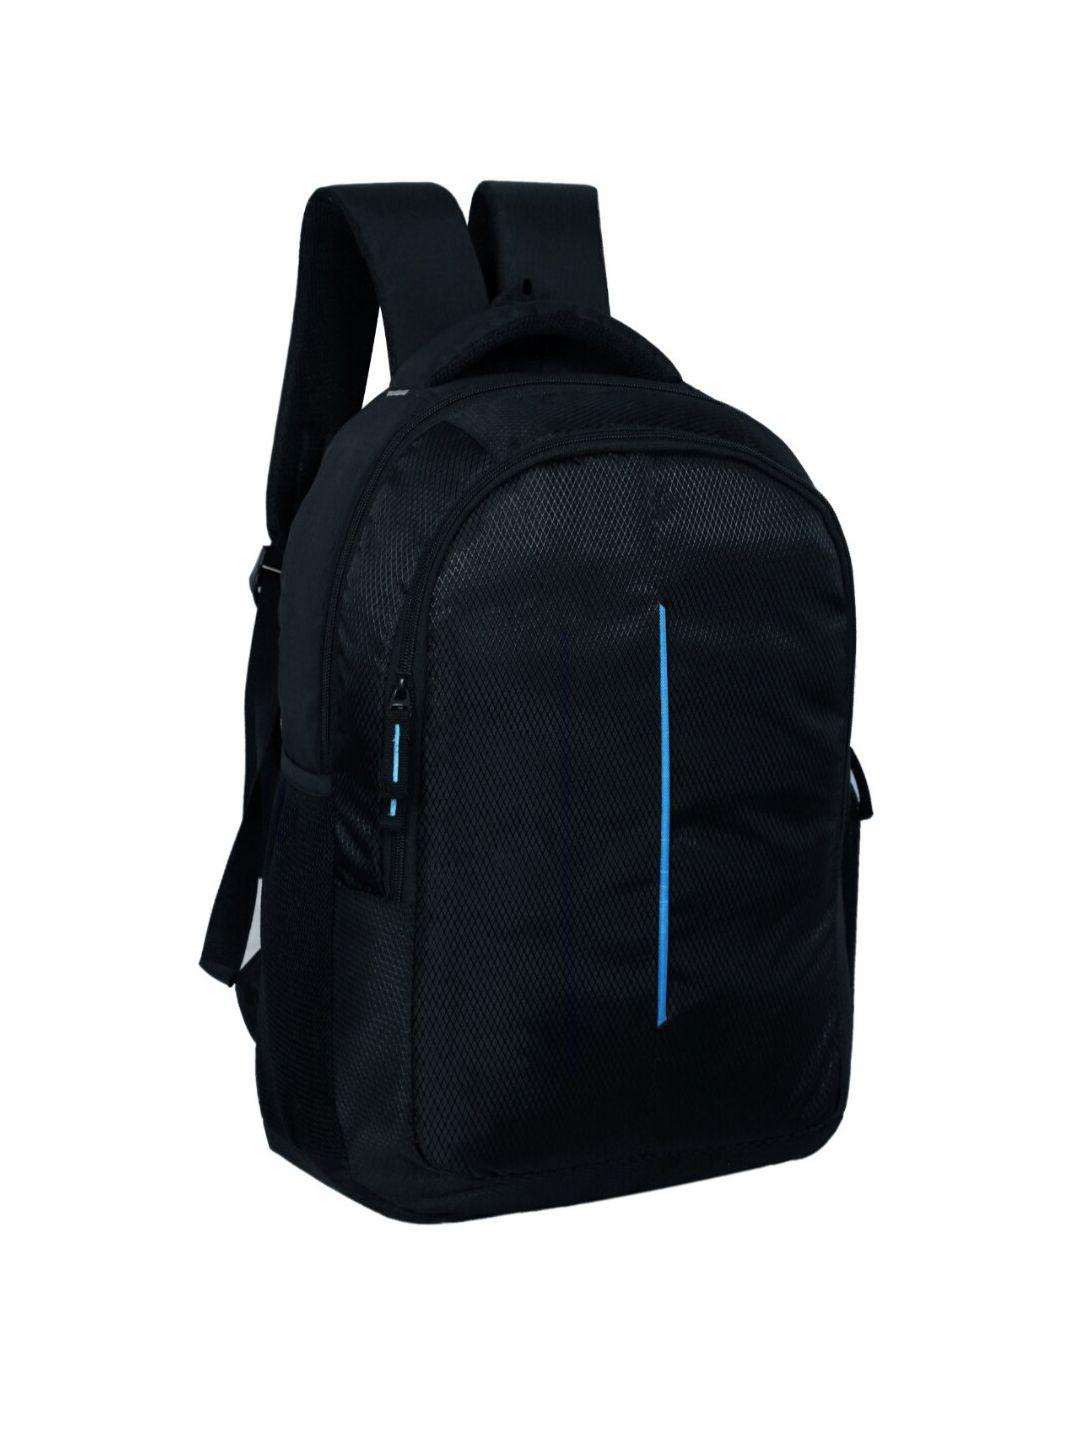 lookmuster unisex blue waterproof laptop backpack